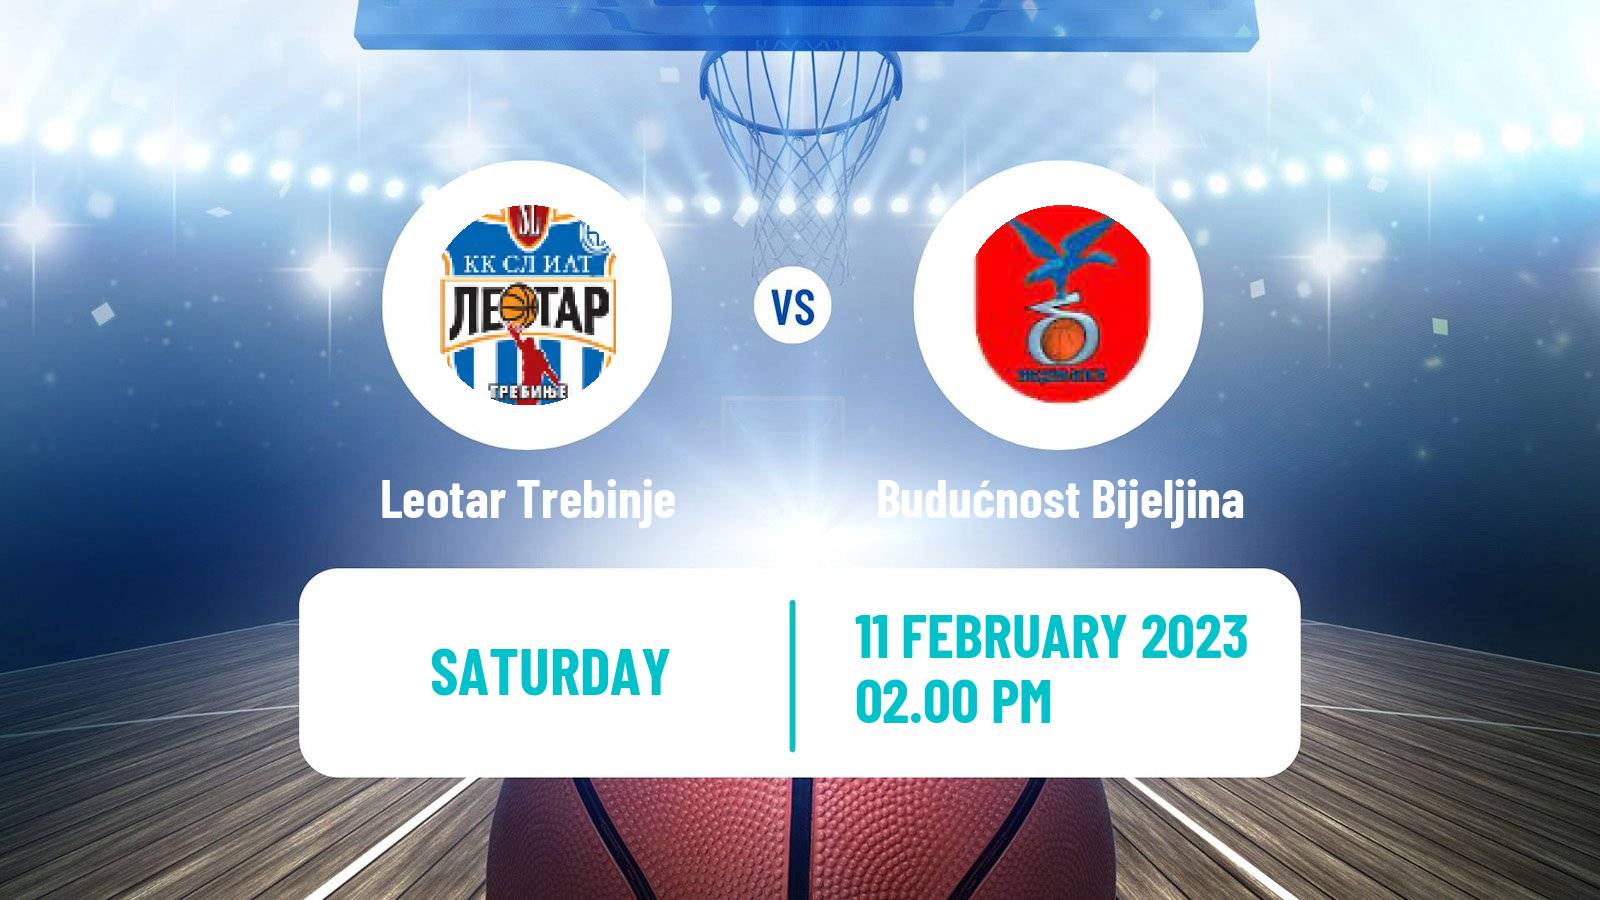 Basketball Bosnian Prvenstvo Basketball Leotar Trebinje - Budućnost Bijeljina